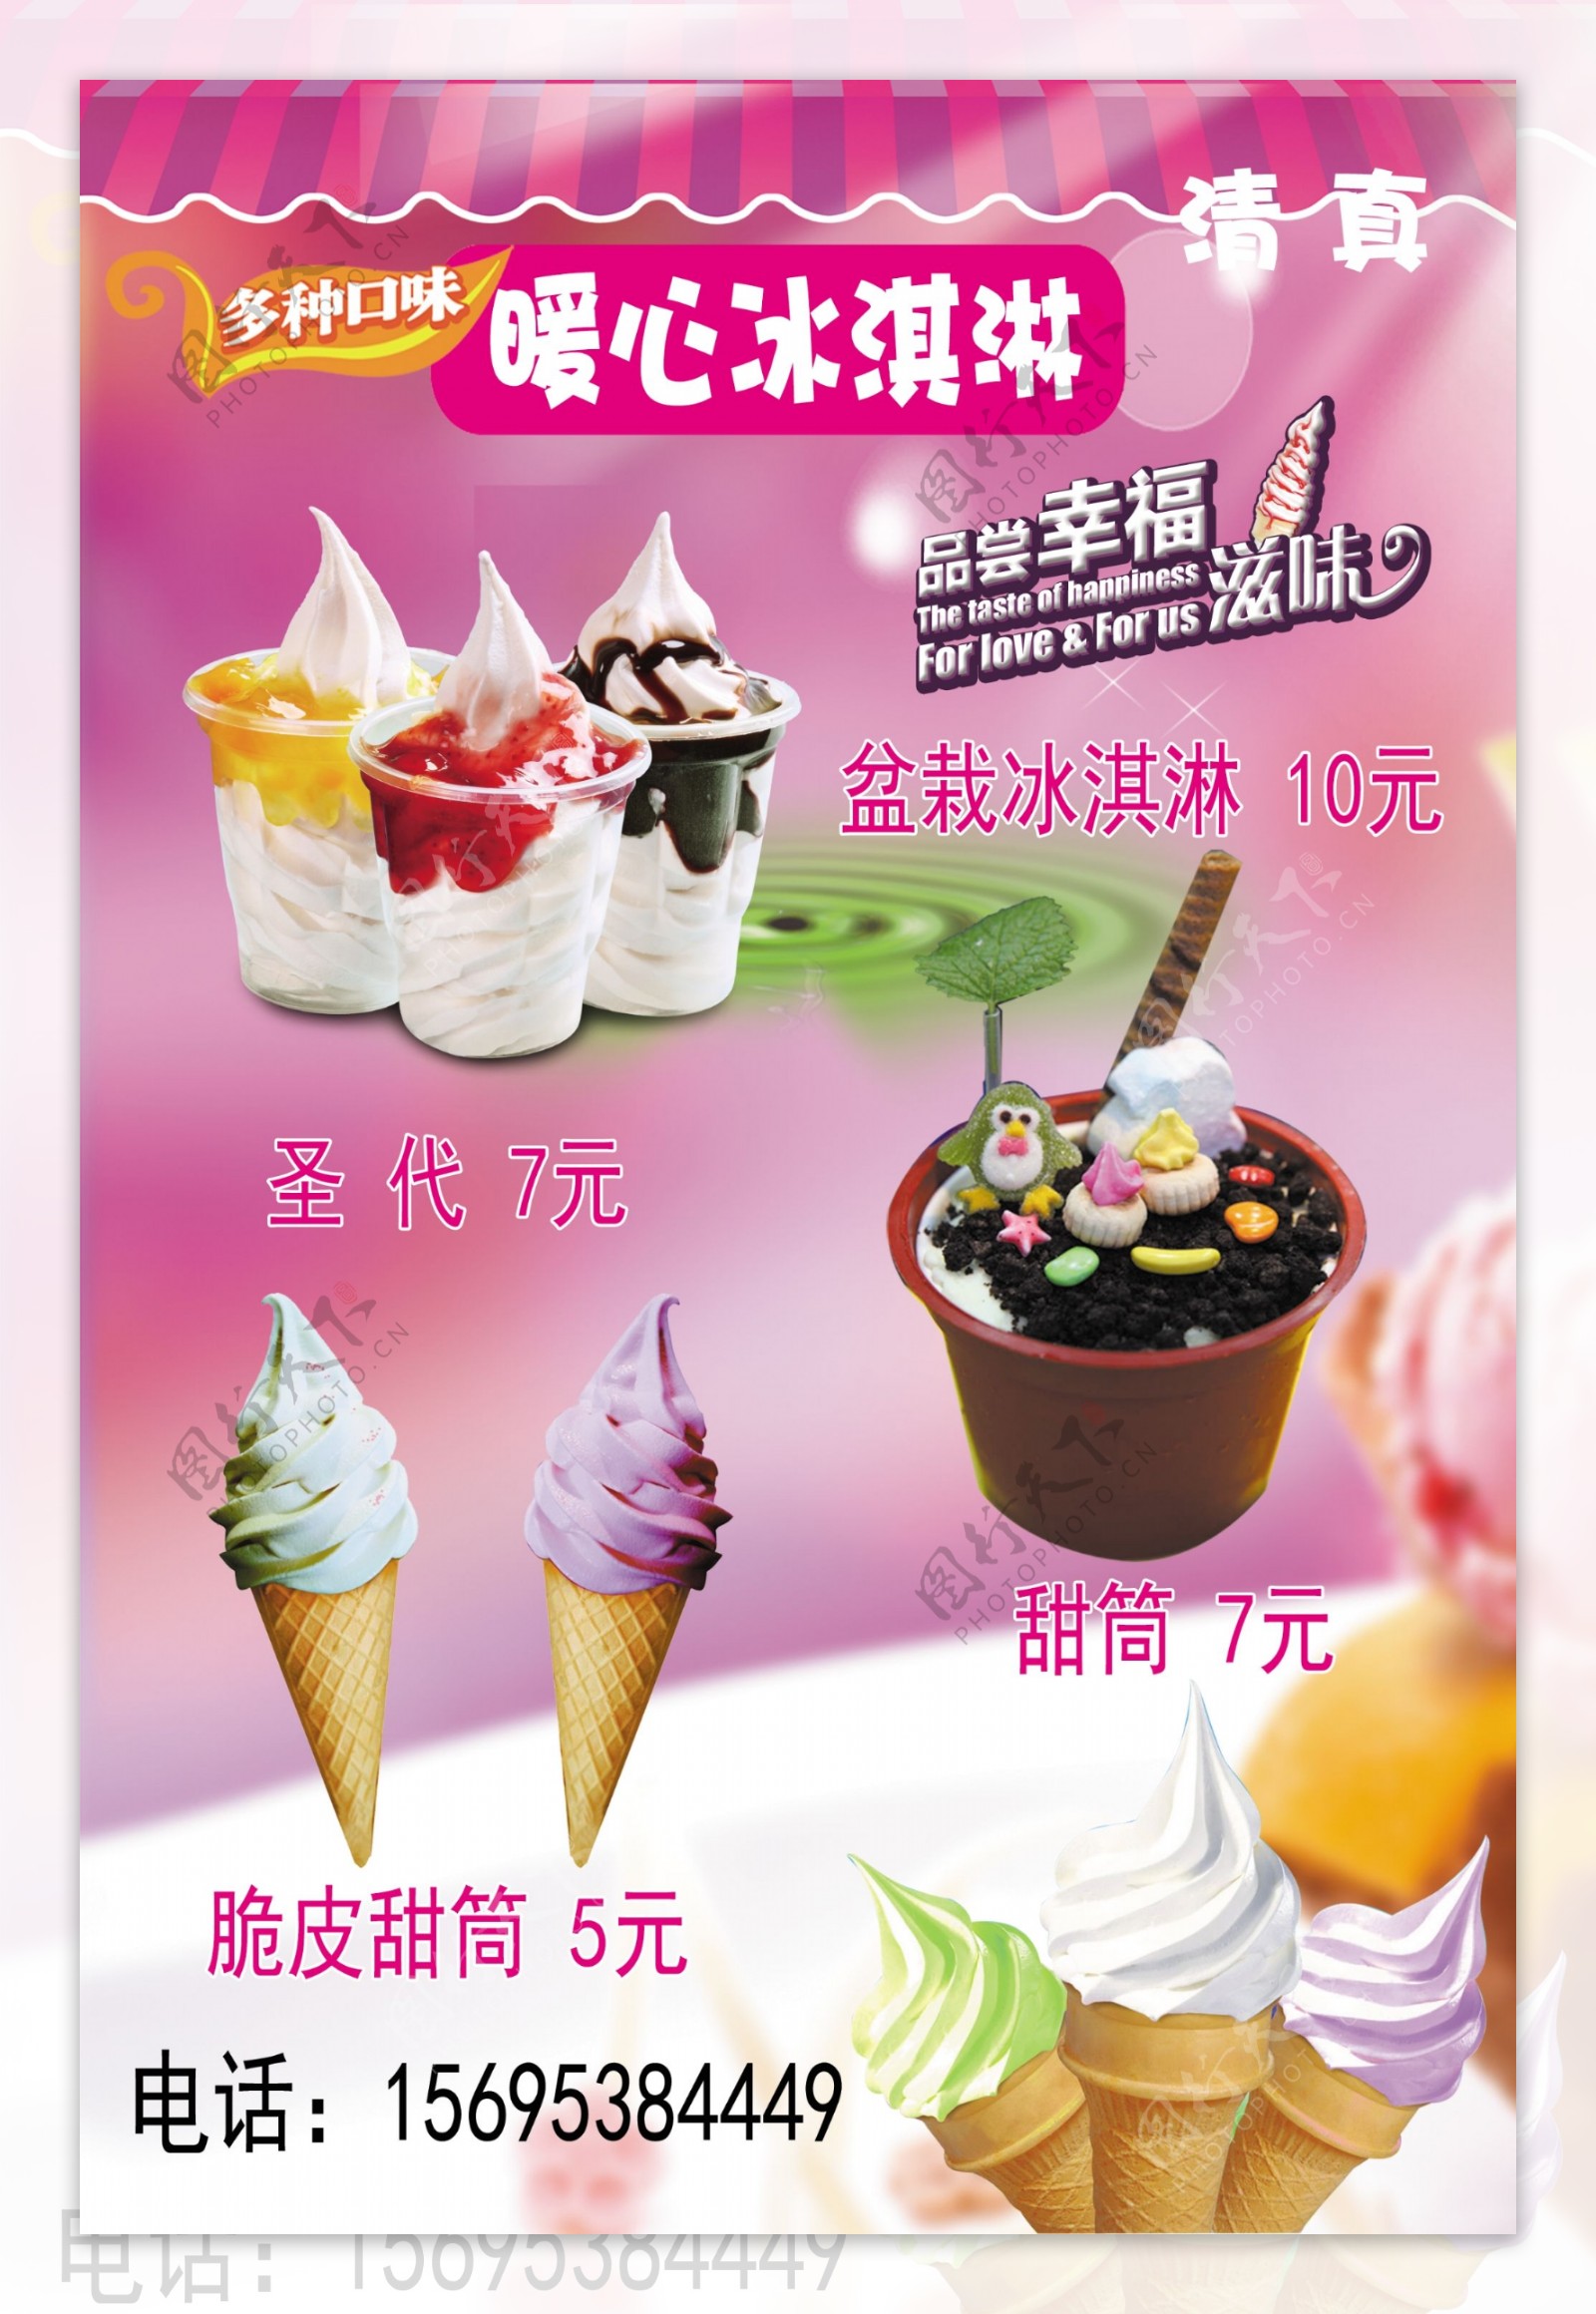 盆栽冰淇淋 by - 愛料理